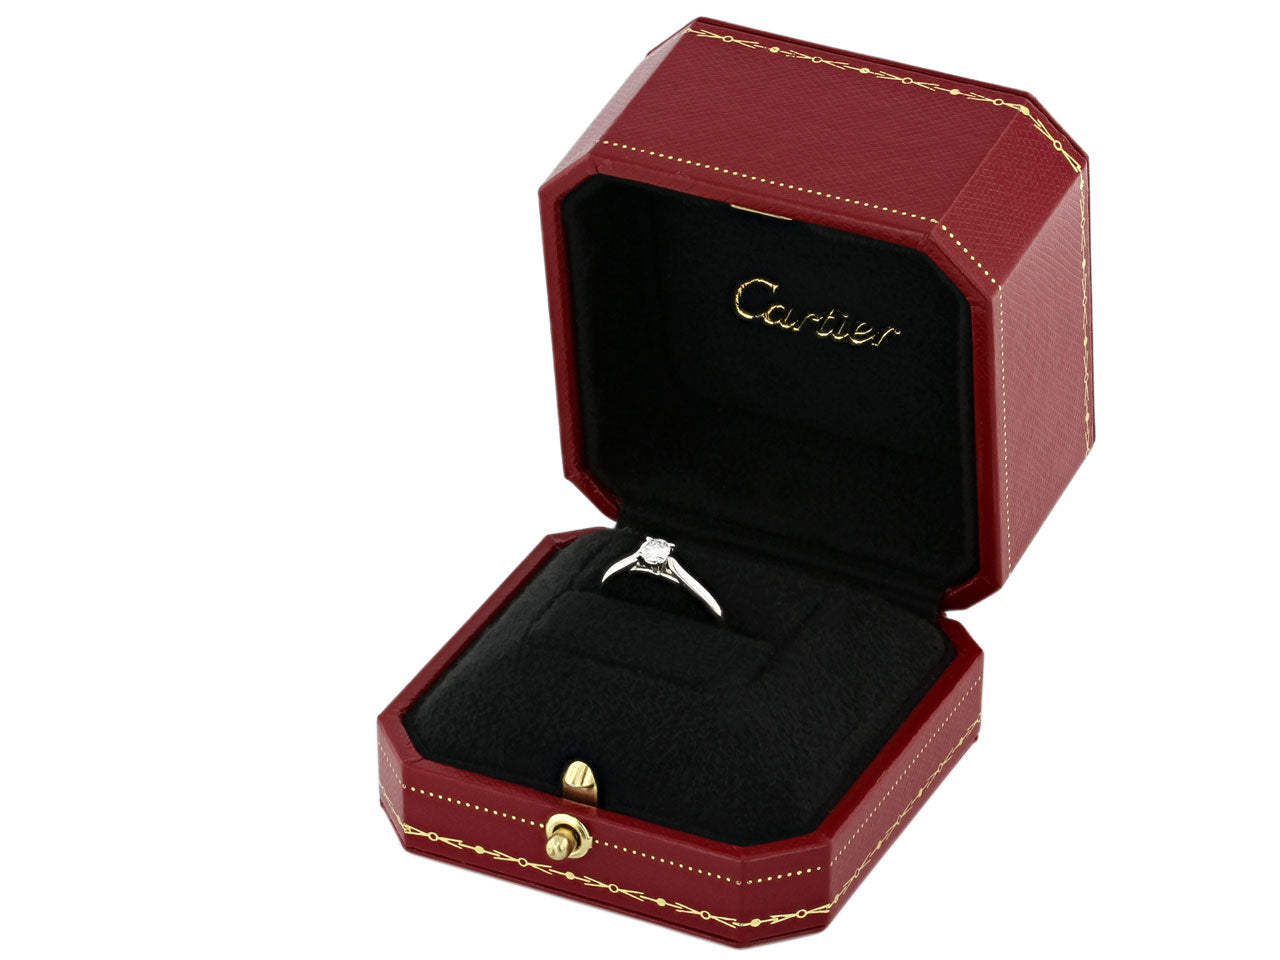 Cartier 0.23 Carat Diamond Solitaire Promise Ring in Platinum